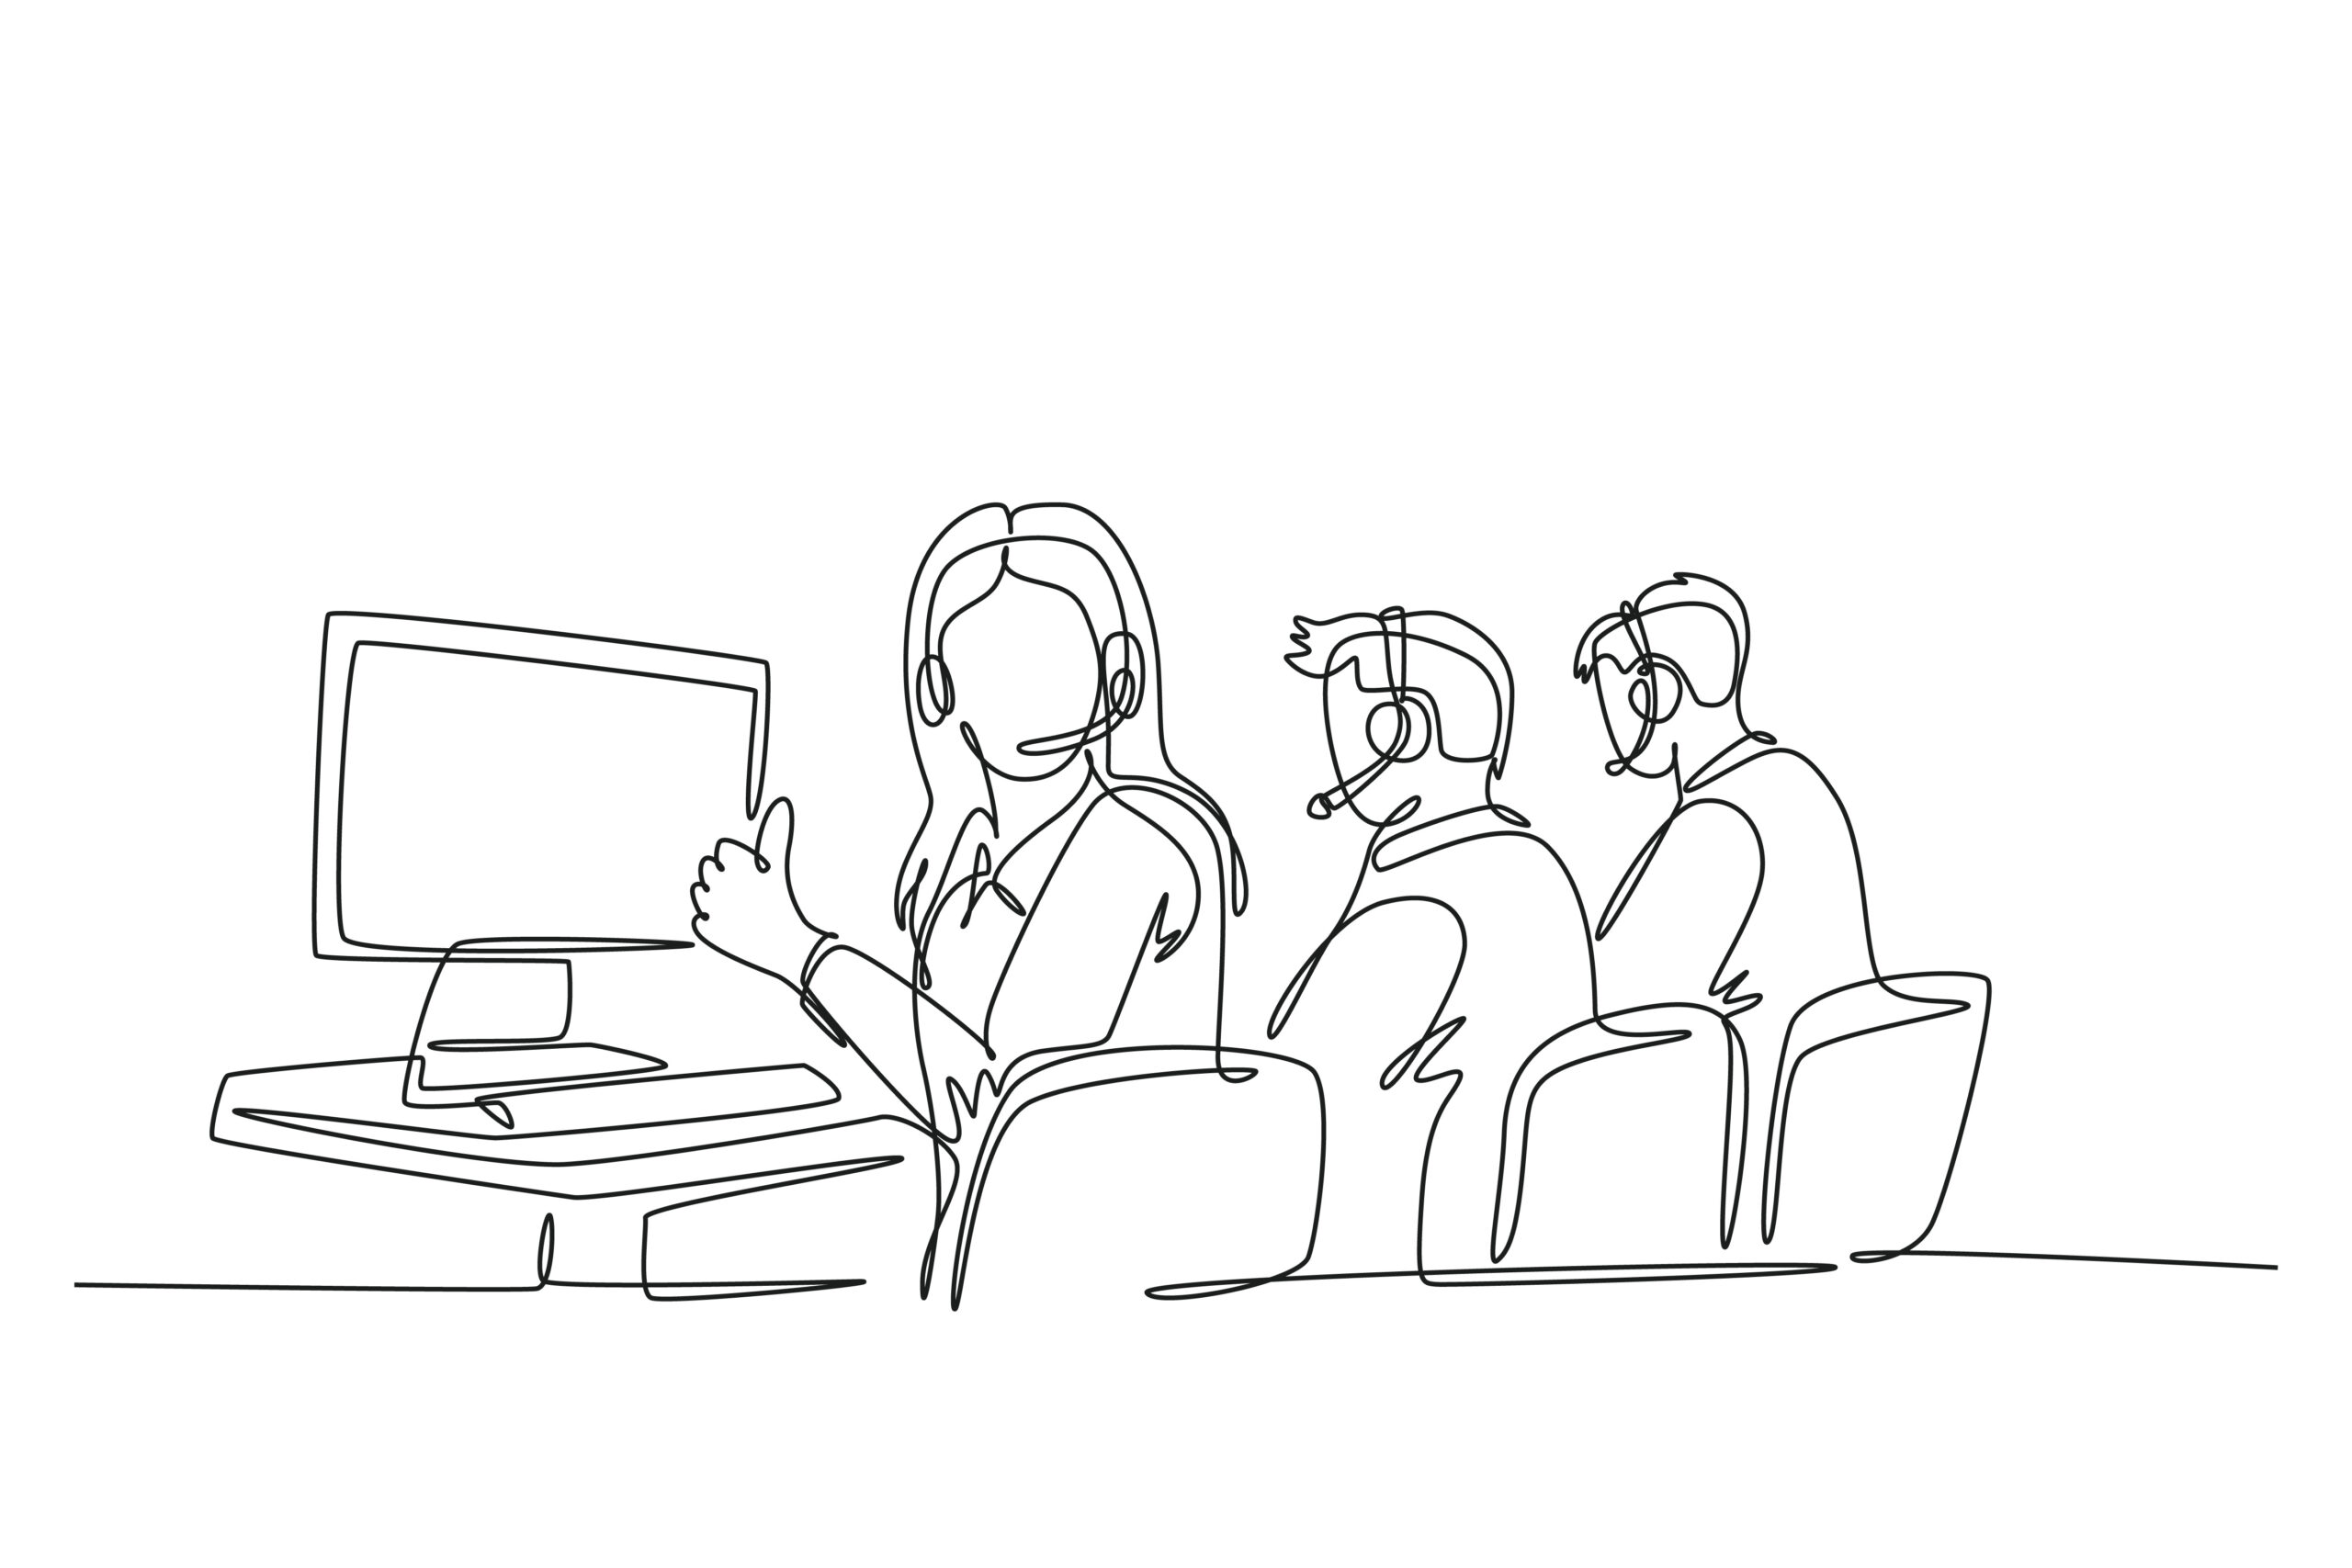 Illustration montrant des personnes avec des casques et un ordinateur.